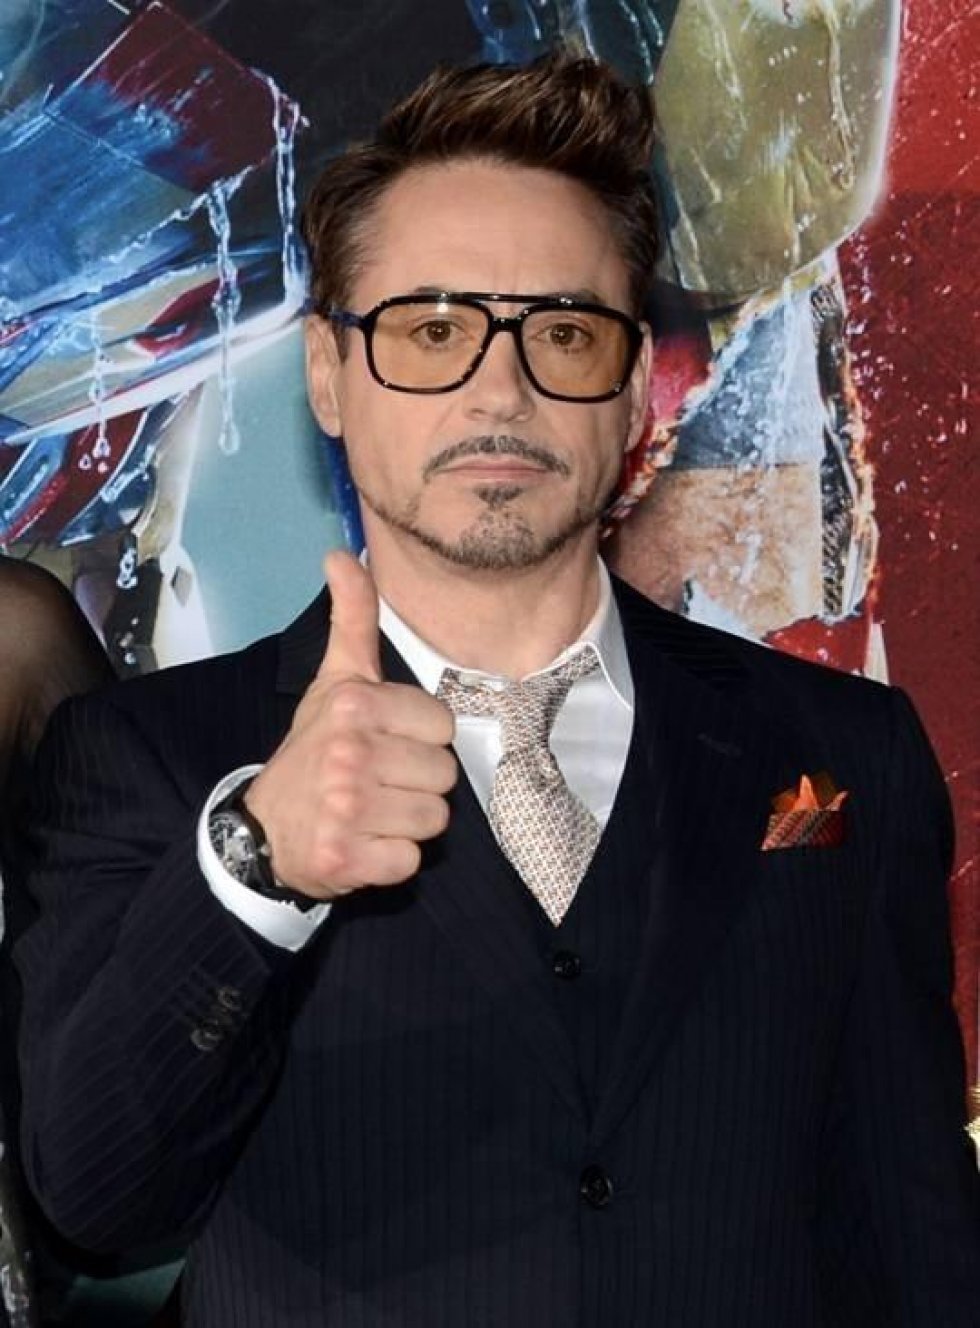 Robert Downey Jr. fremviser ursamlingen